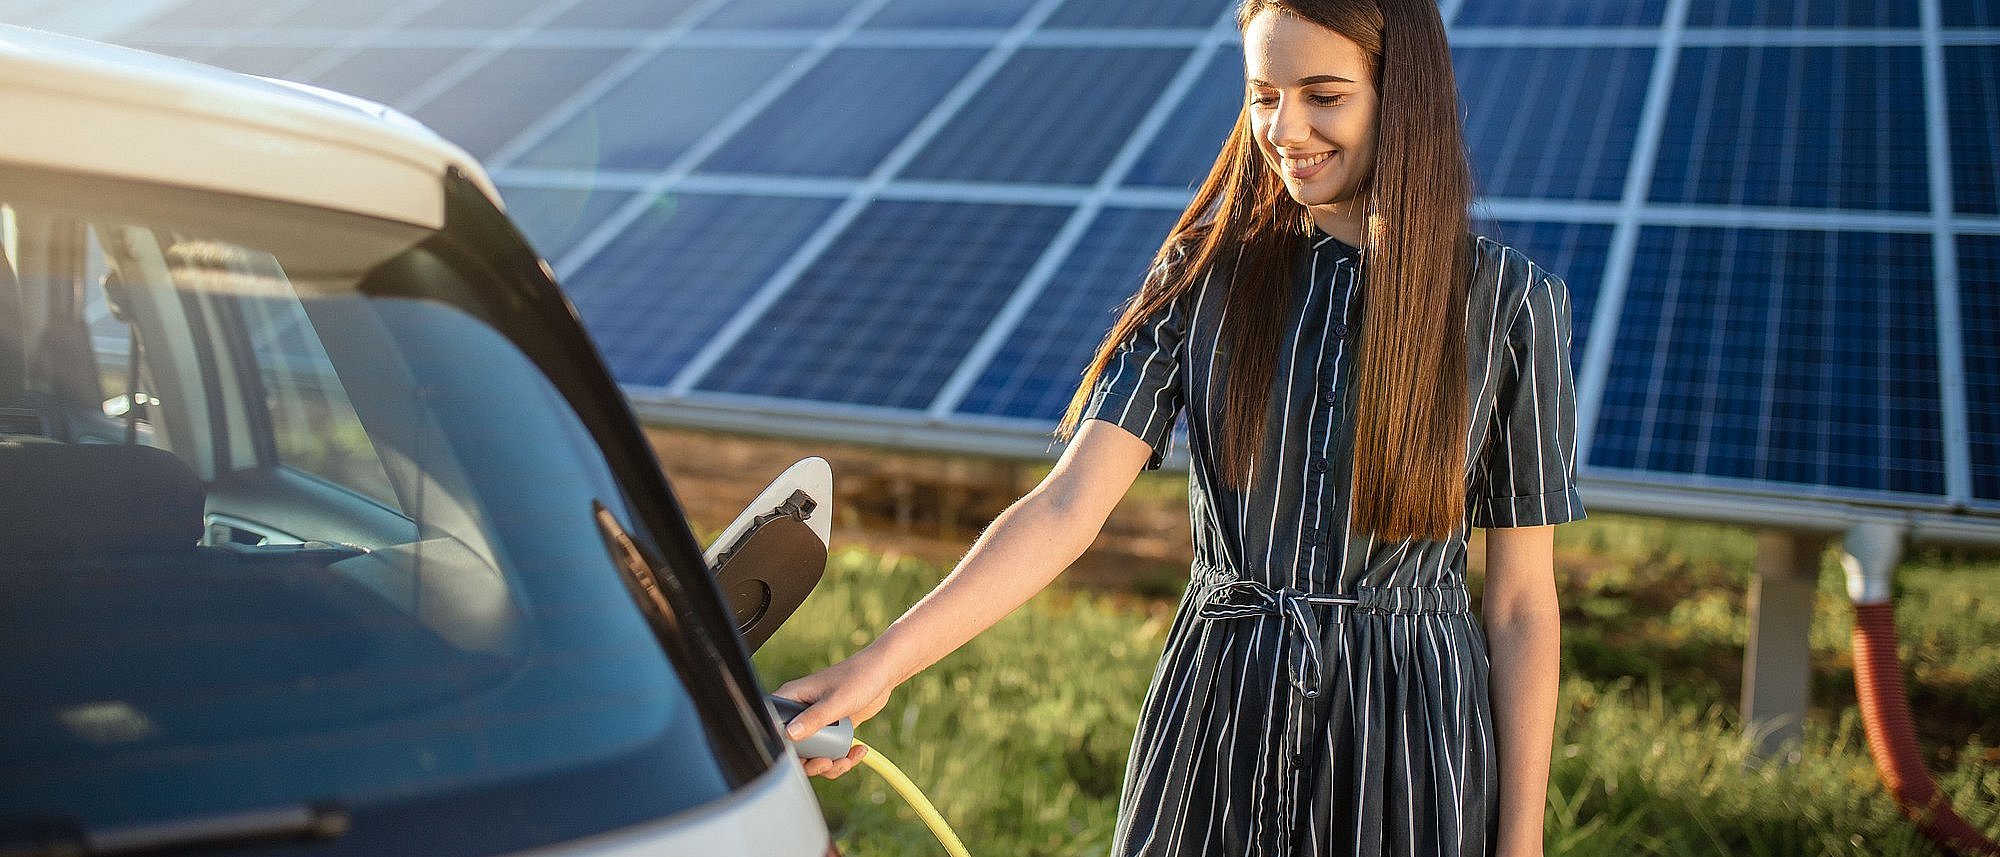 Lächelnde Frau lädt E-Auto und im Hintergrund ist eine große Photovoltaikanlage auf einer grünen Wiese